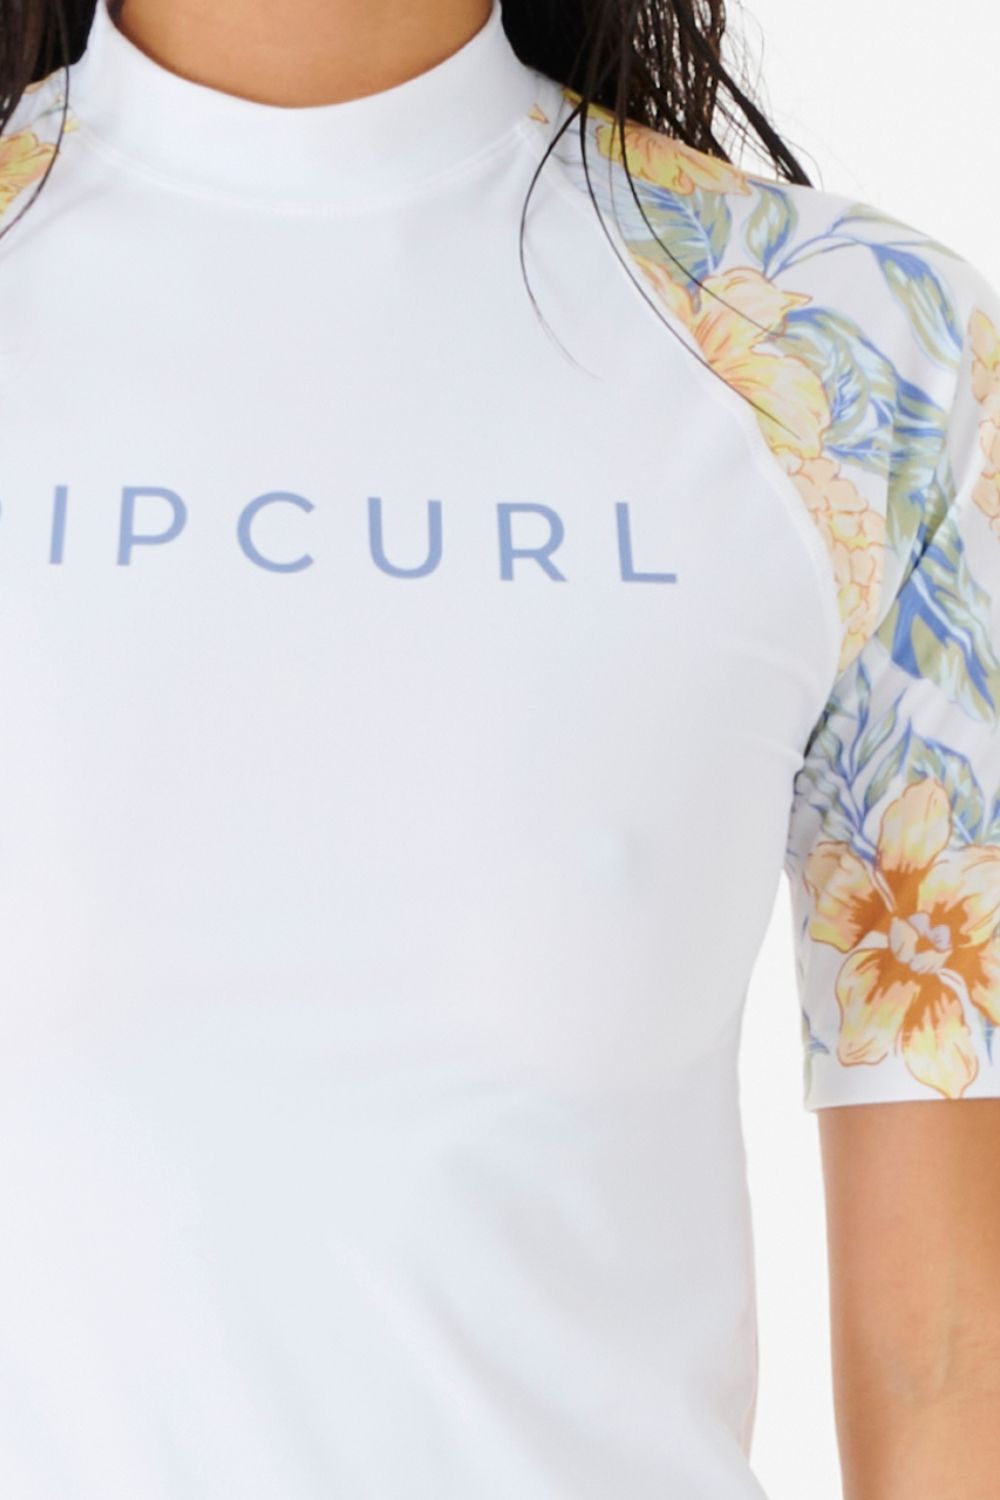 Tee Shirt de bain anti-UV Femme - Always Summer - Rip Curl - UPF 50+ – KER  SUN